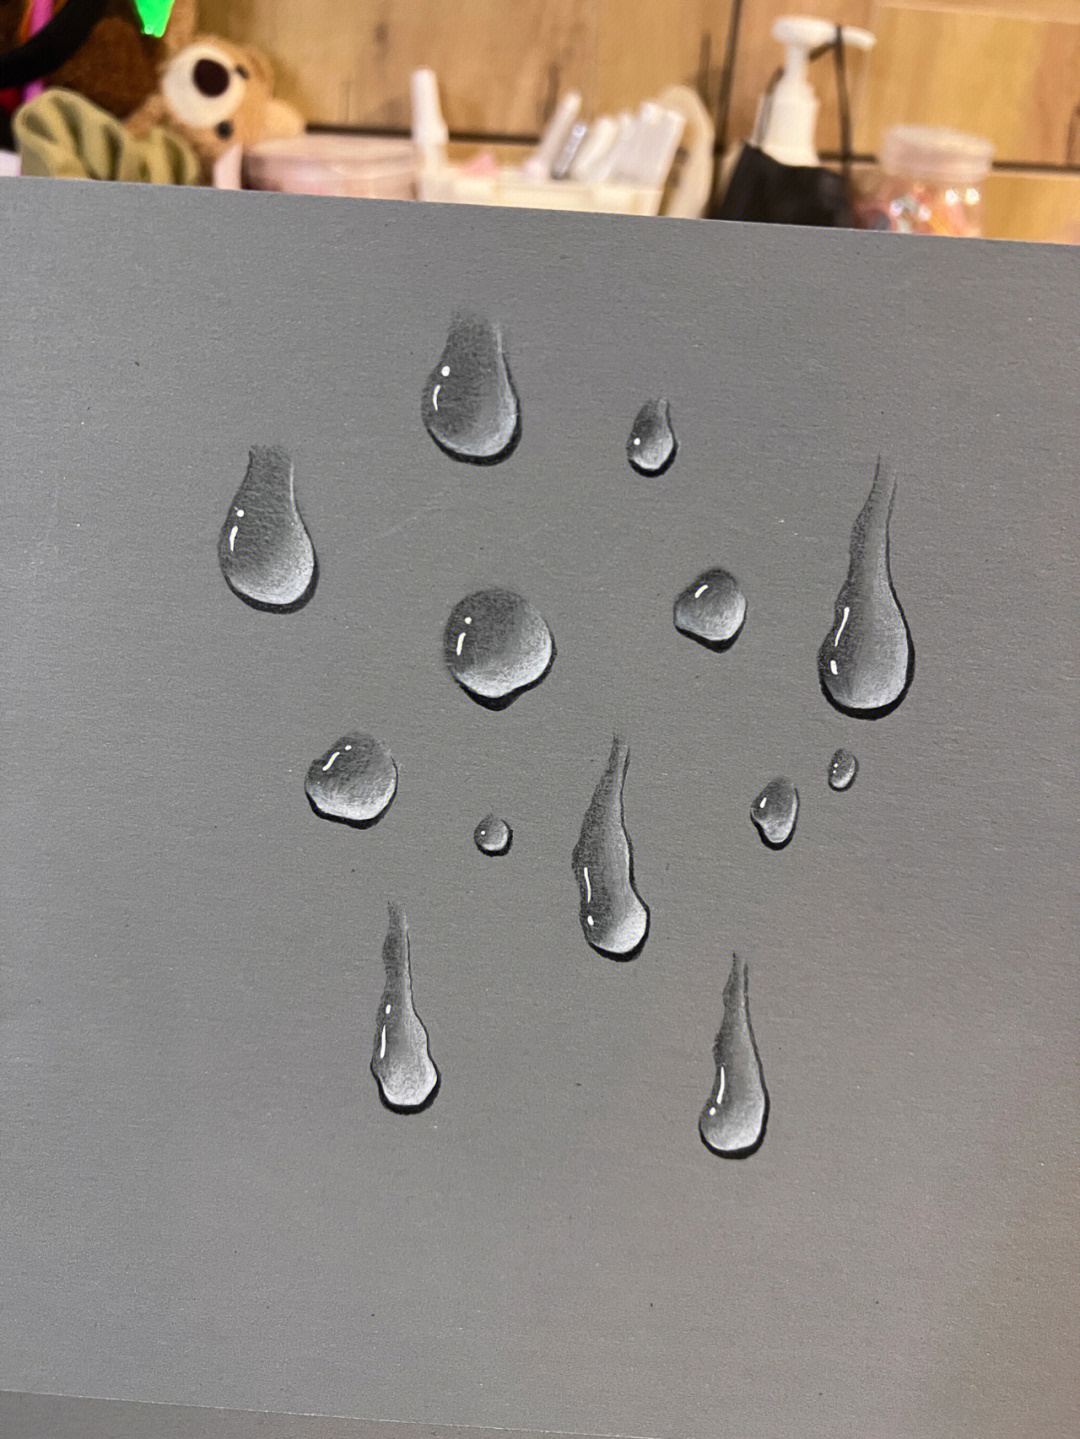 雨滴的画法图片